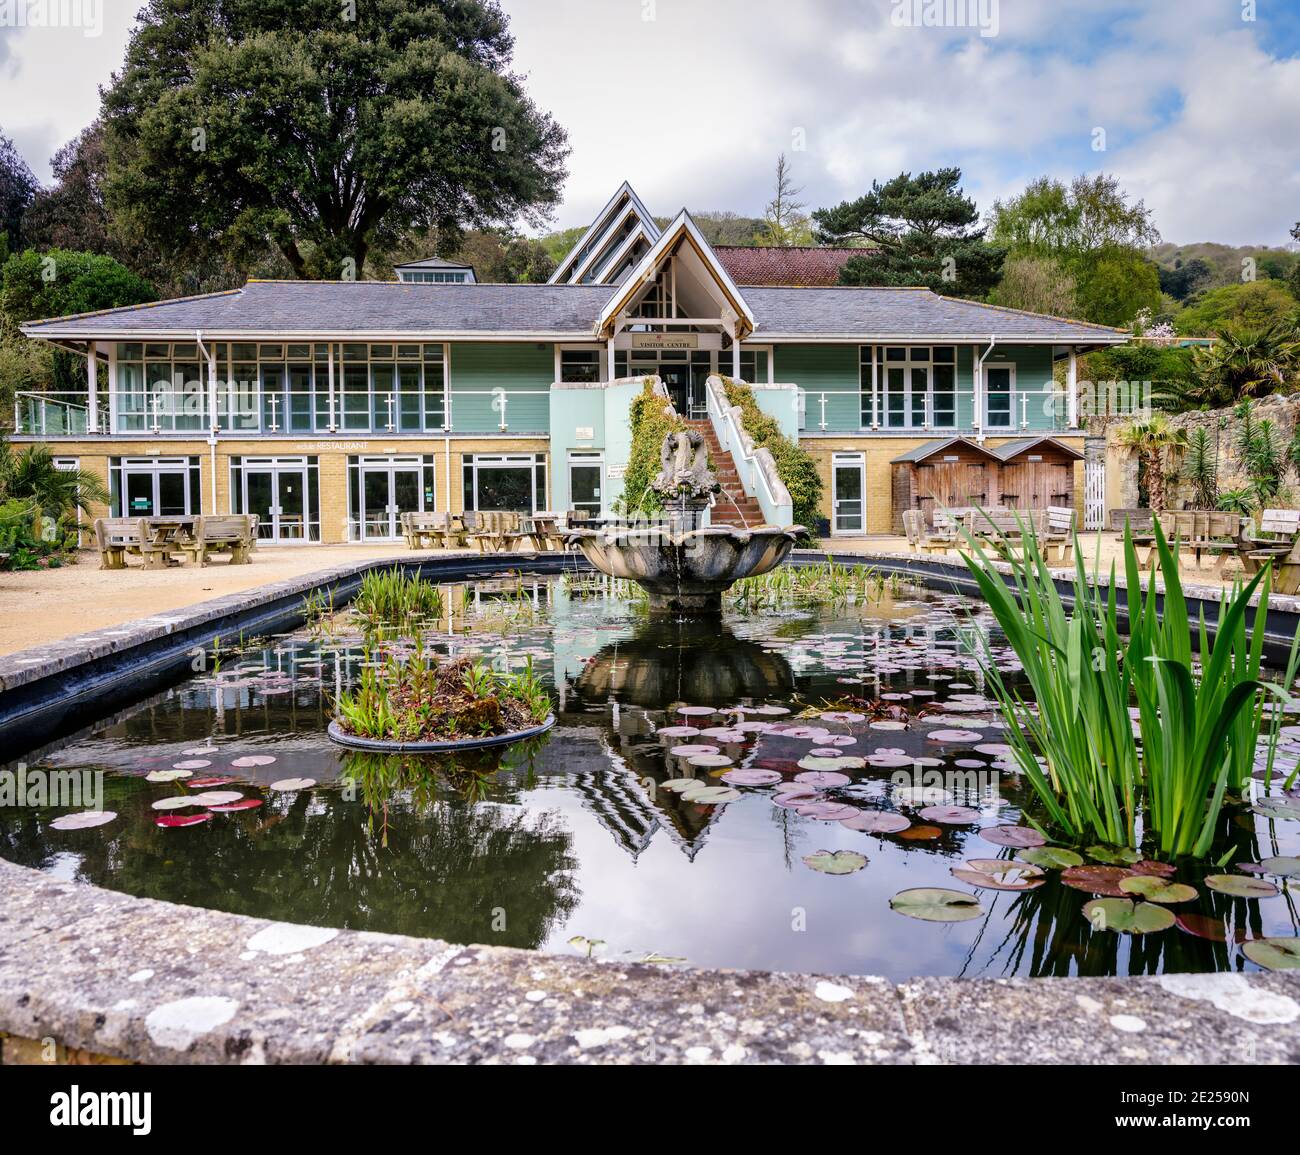 Atracción para visitantes: El jardín más caliente de Gran Bretaña, el jardín botánico Ventnor en la isla de Wight, Reino Unido. Foto de stock